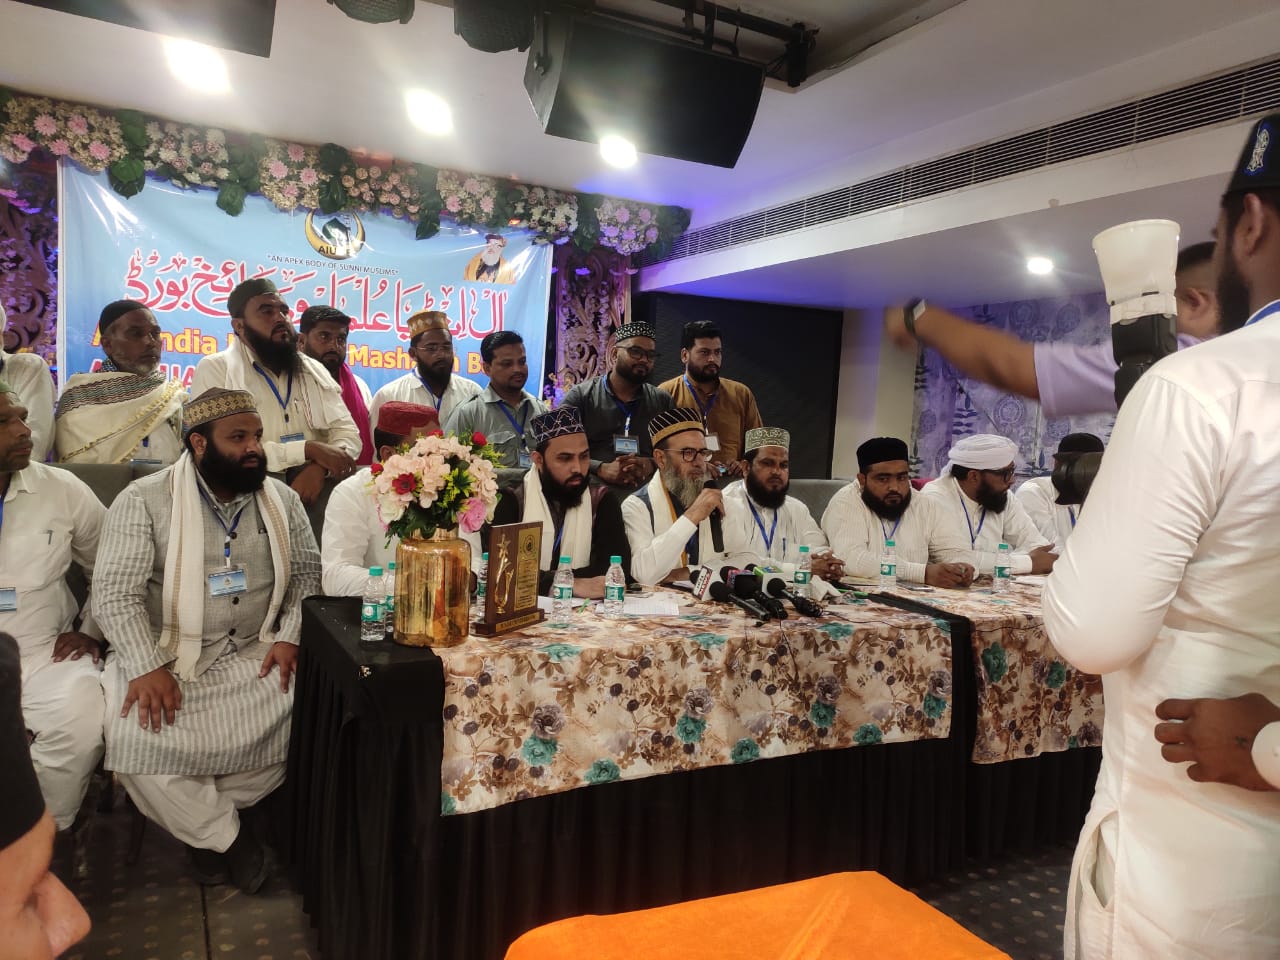 آل انڈیا علماء ومشائخ بورڈ پنجاب صوبہ کا سالانہ اجلاس منعقد